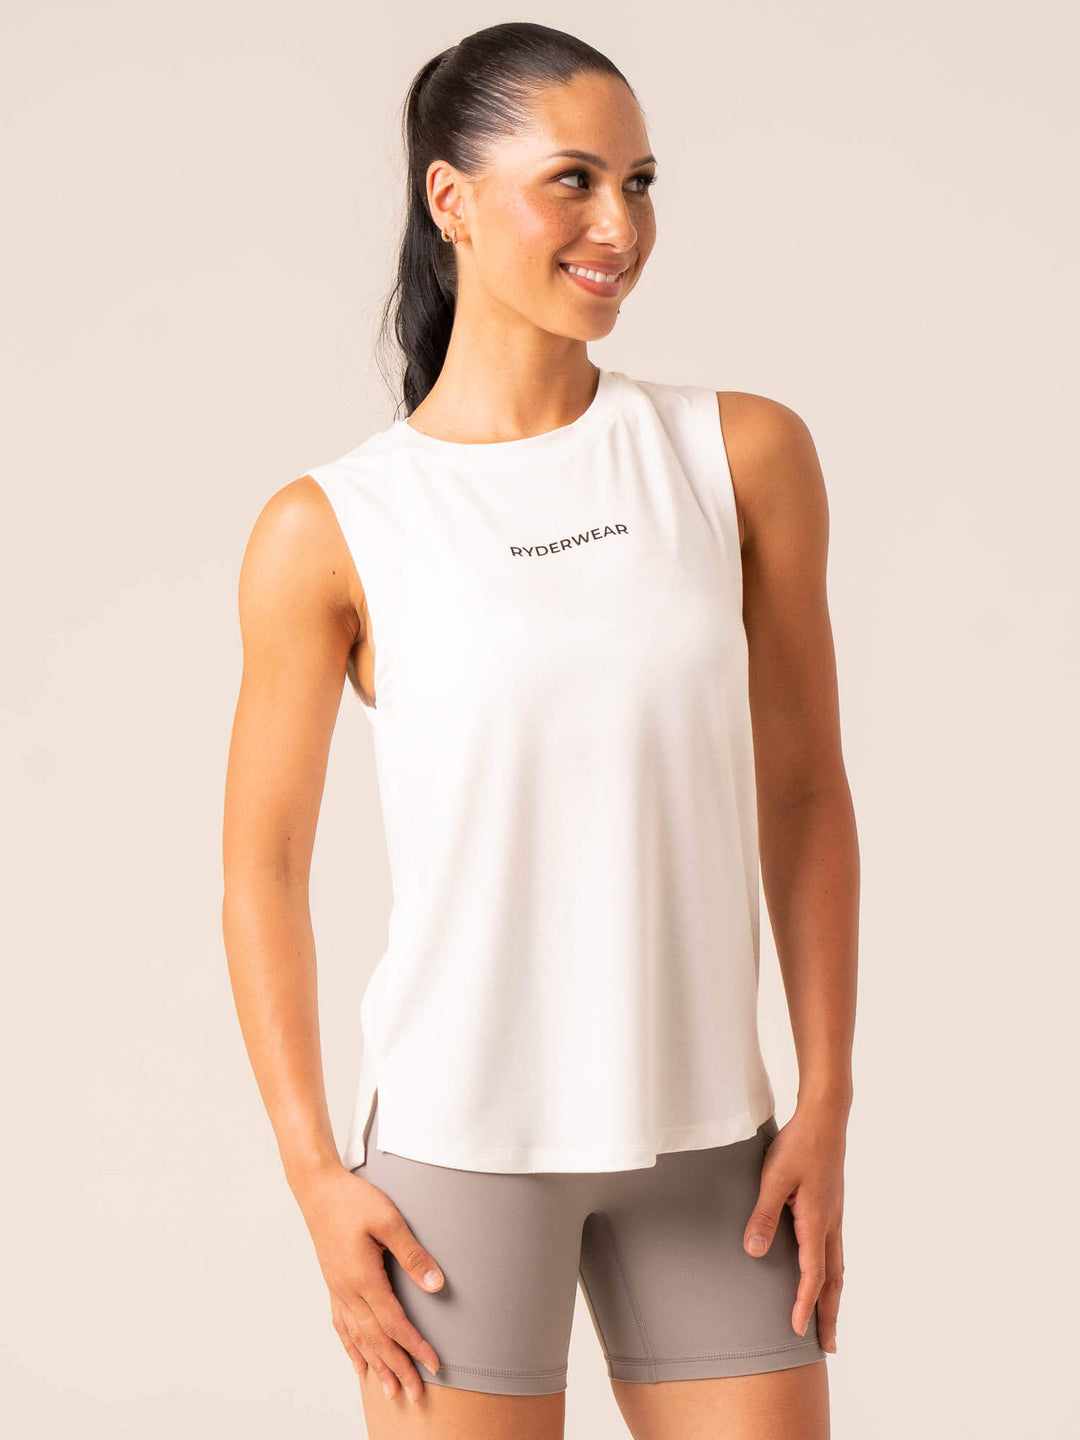 Embody Tank - White Clothing Ryderwear 